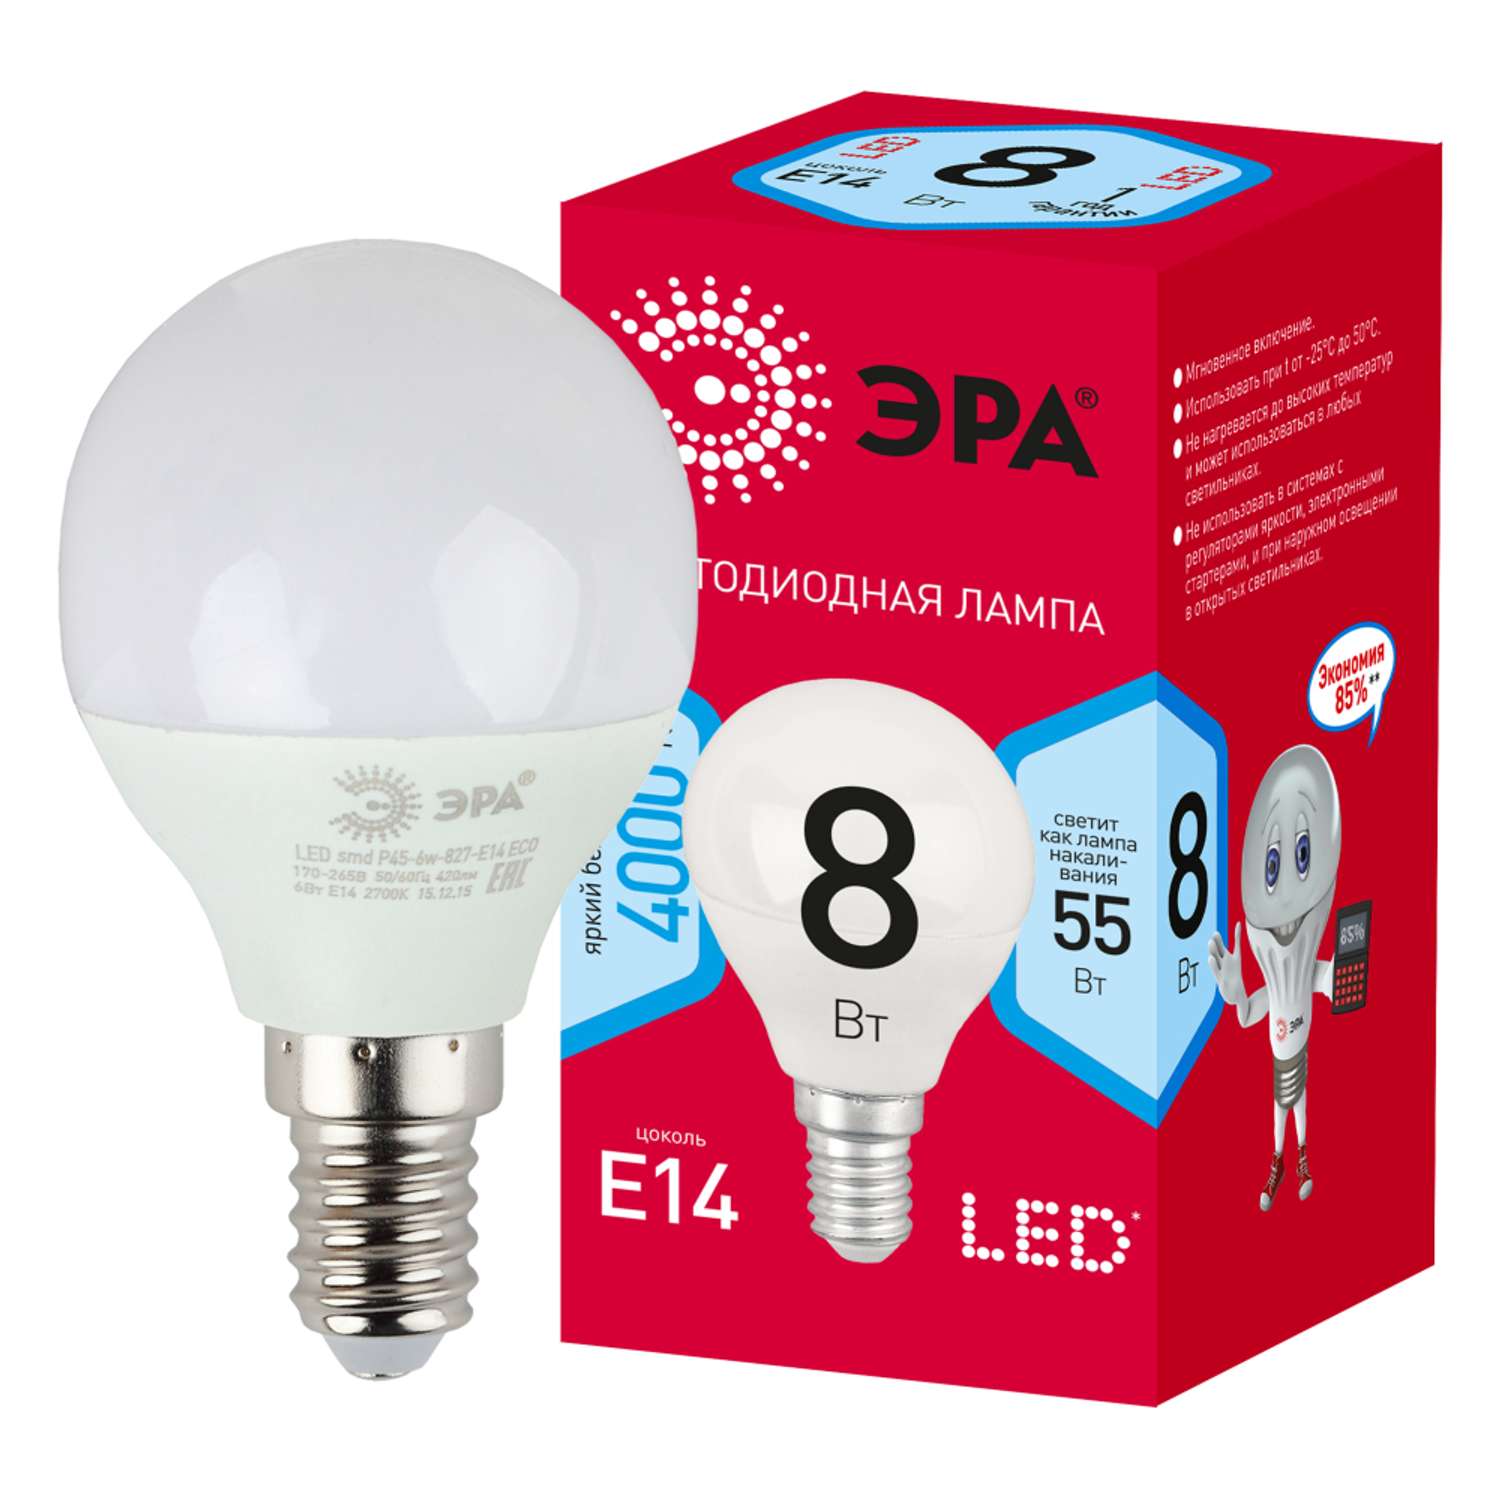 Лампочка светодиодная Эра Red Line LED P45-8W-840-E14 шар нейтральный белый свет - фото 1